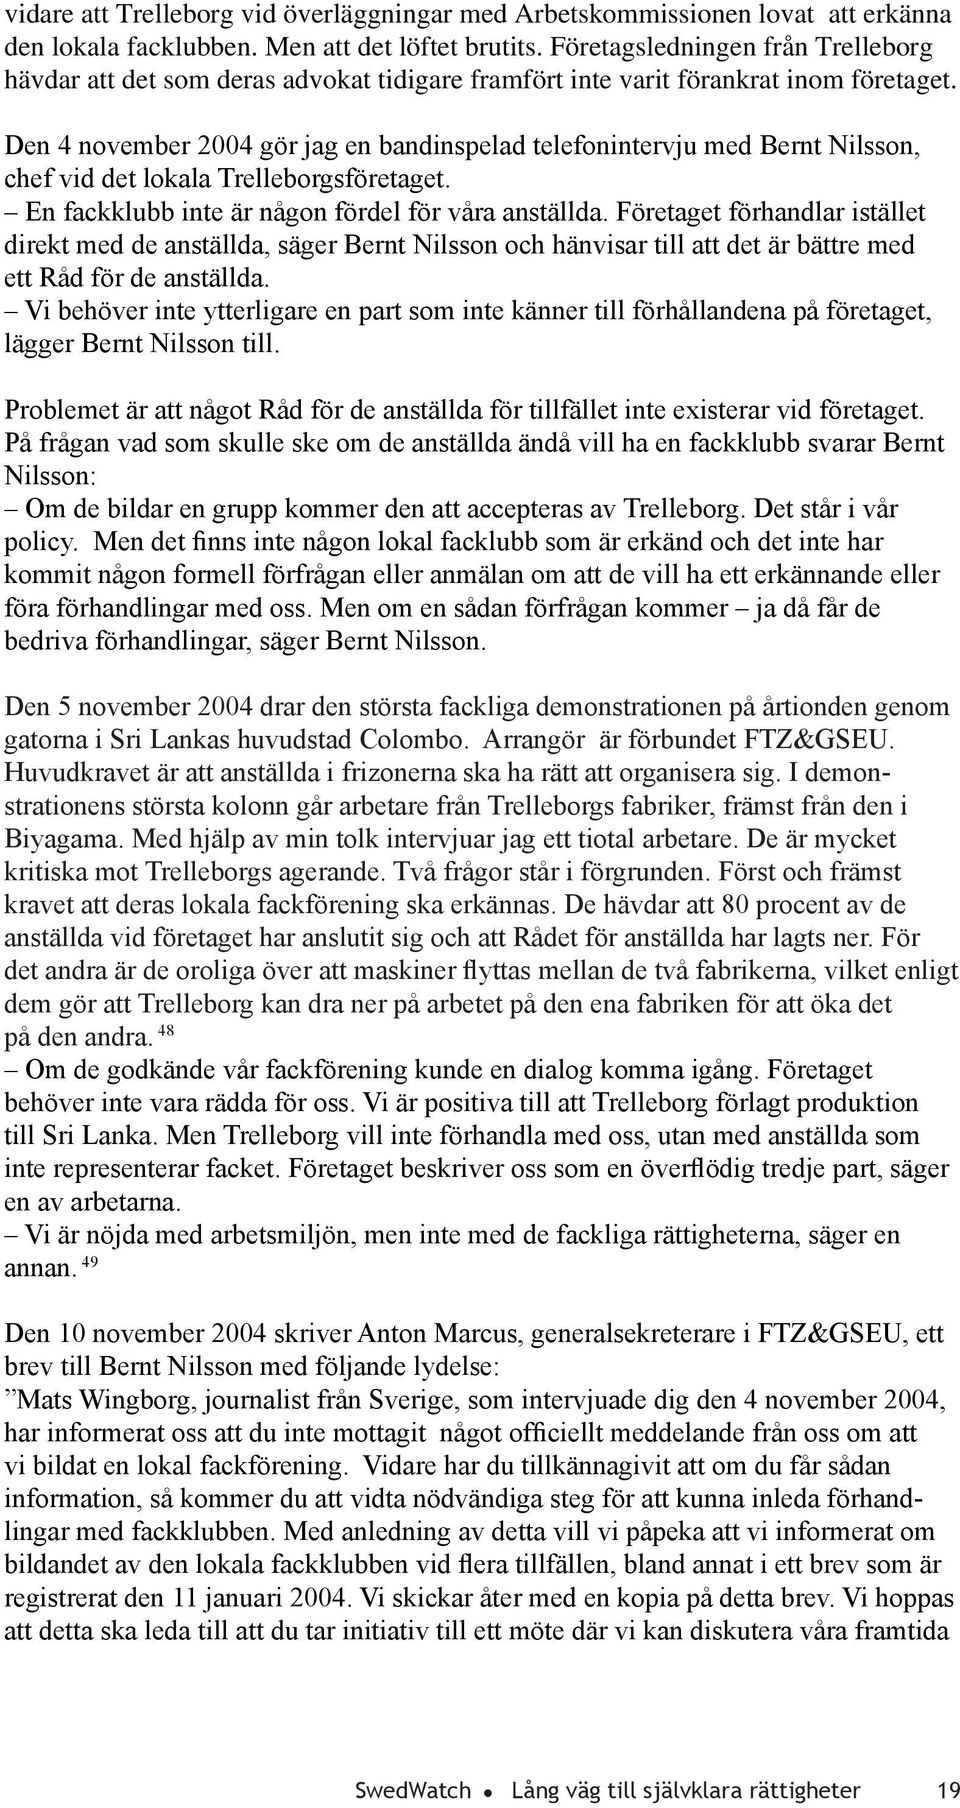 Den 4 november 2004 gör jag en bandinspelad telefonintervju med Bernt Nilsson, chef vid det lokala Trelleborgsföretaget. En fackklubb inte är någon fördel för våra anställda.